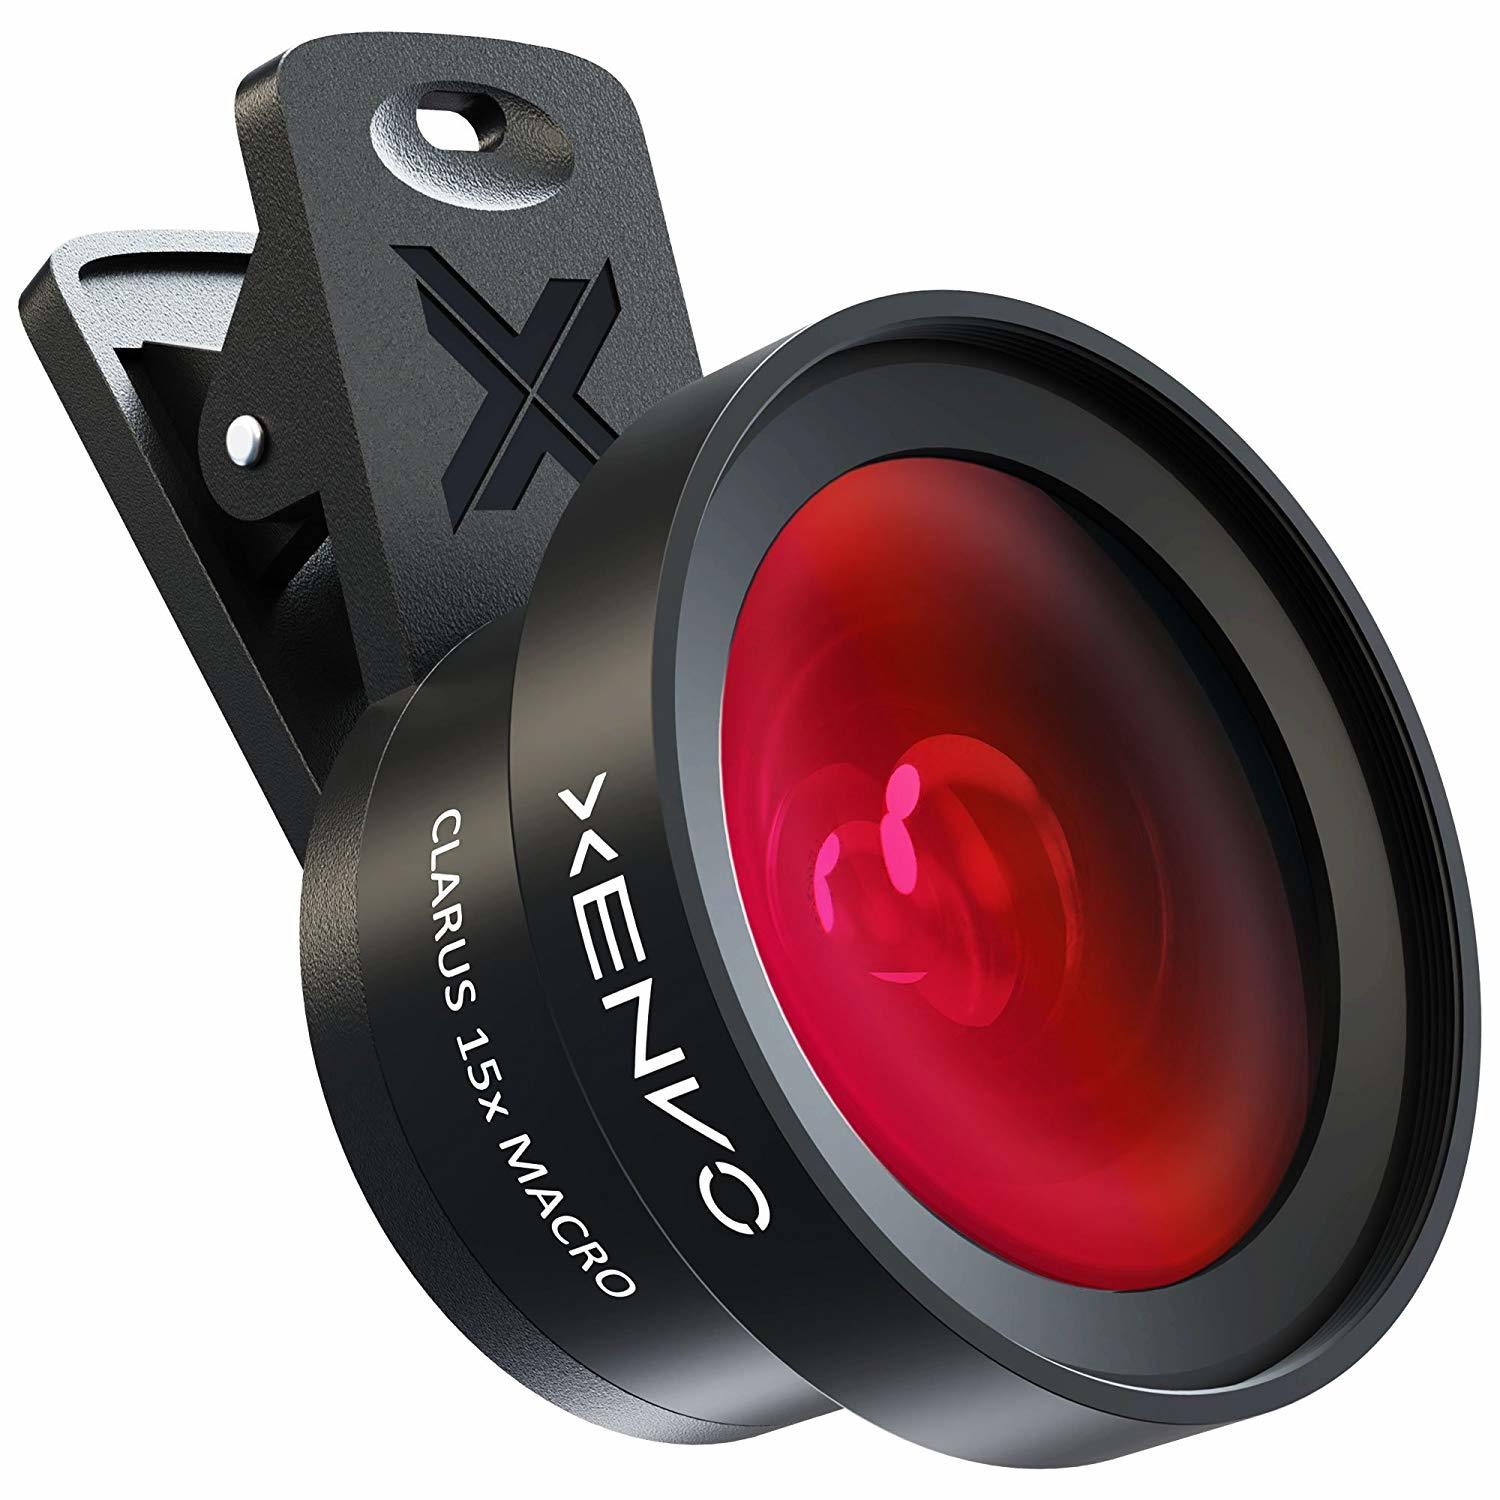 Xenvo スマホトレンド クリップで簡単装着 Xenvo Iphoneカメラ レンズキット プロ マクロレンズ ワイドアングルレンズ Ledライト Iphone Android Samsung タブレット用 トレンドラボ Base